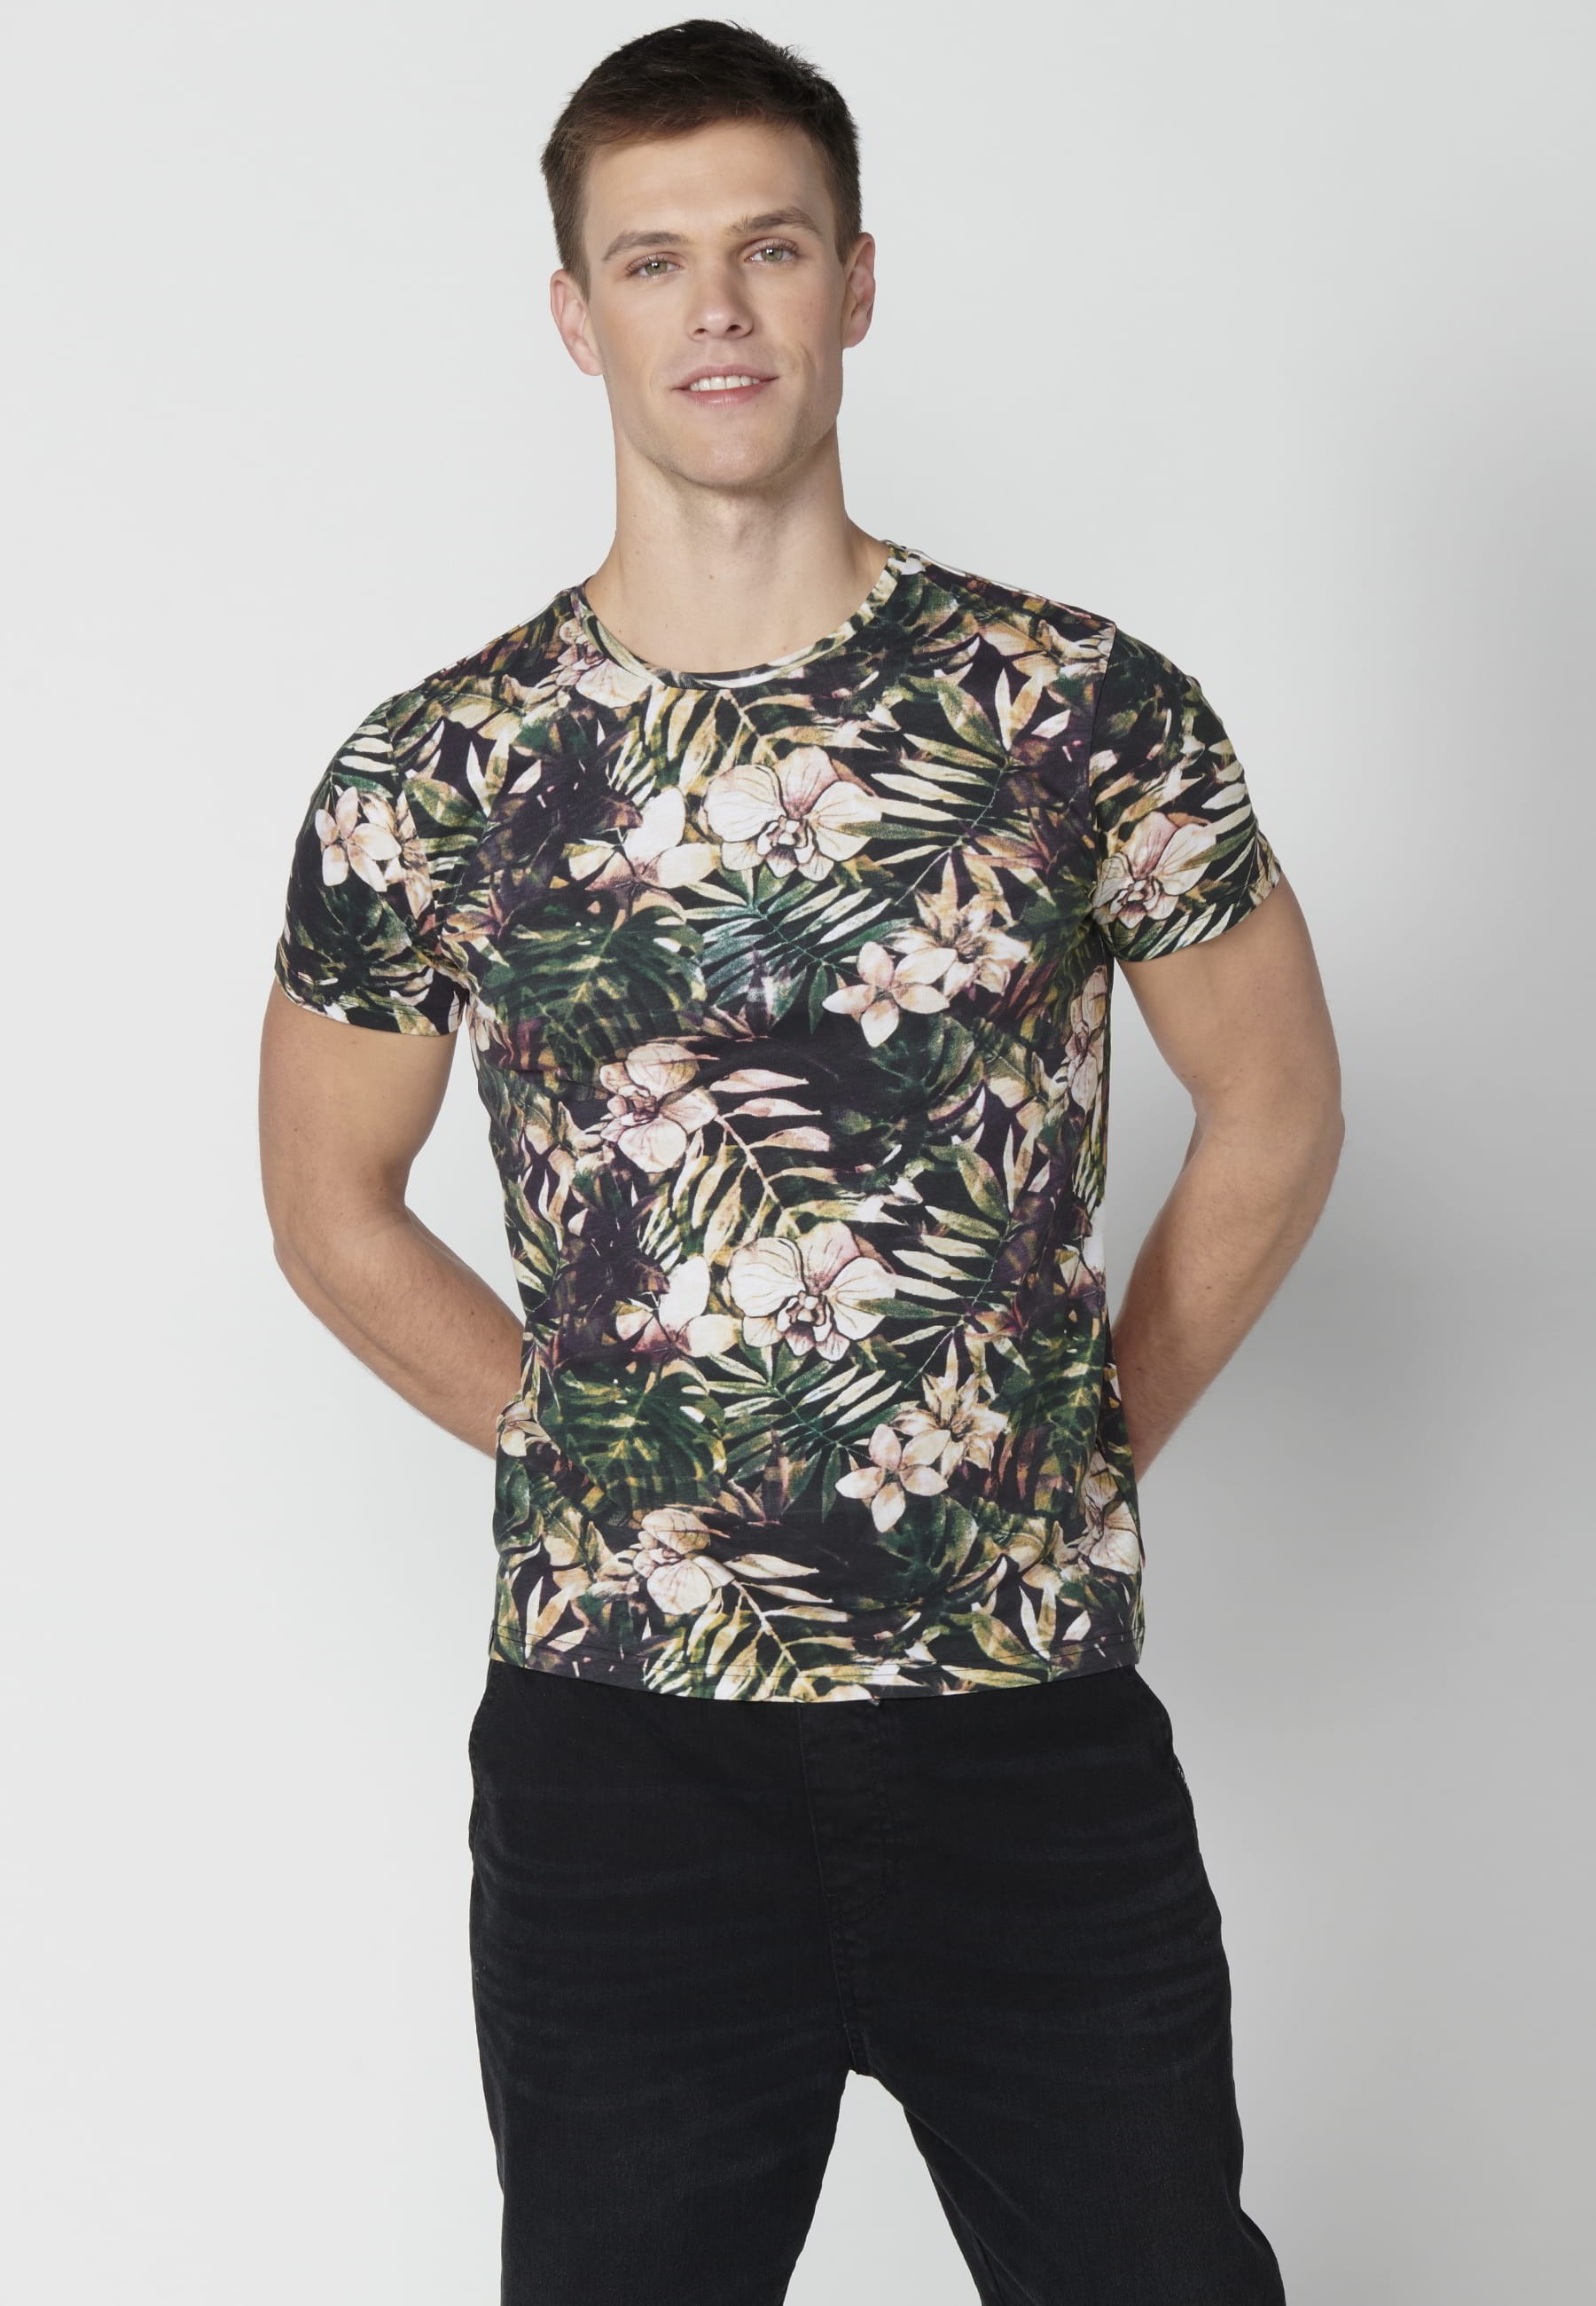 T-shirt Homme Multicolore Imprimé Tropical En Coton À Manches Courtes